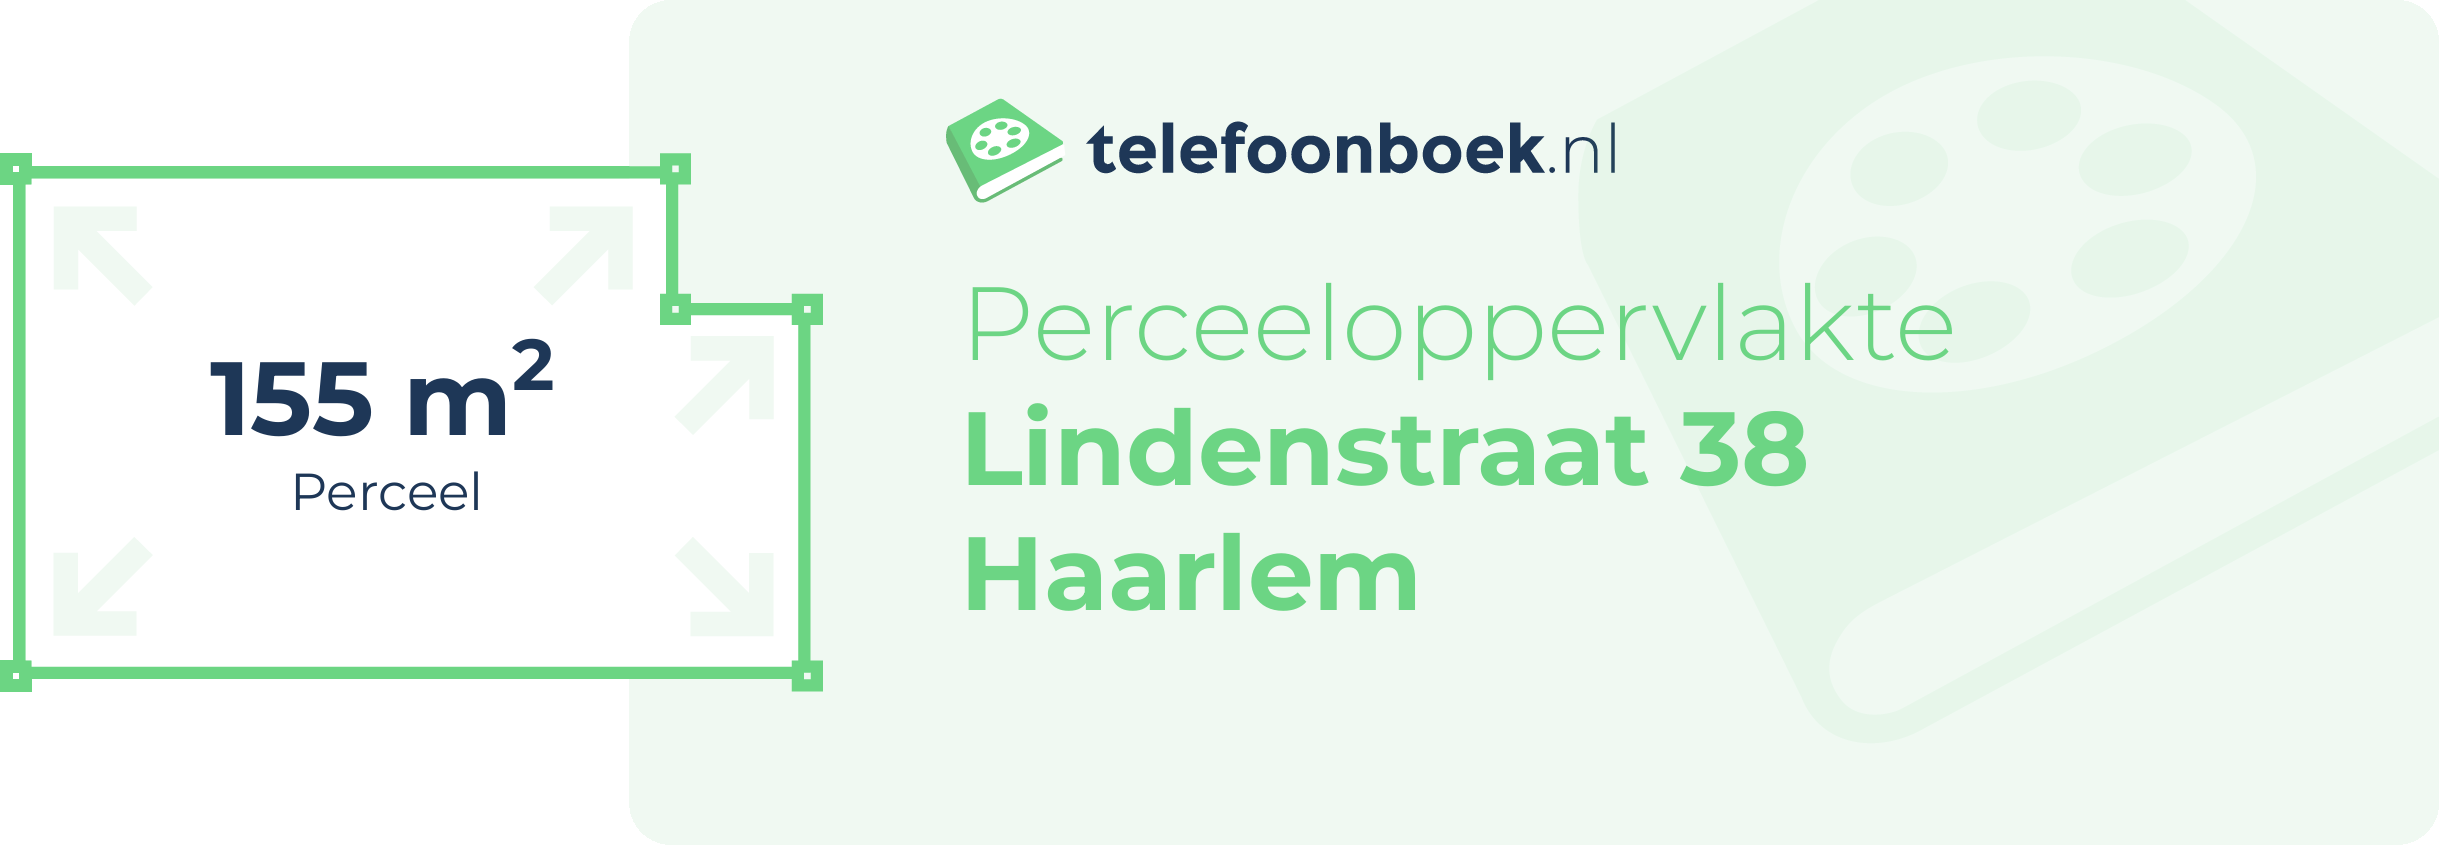 Perceeloppervlakte Lindenstraat 38 Haarlem